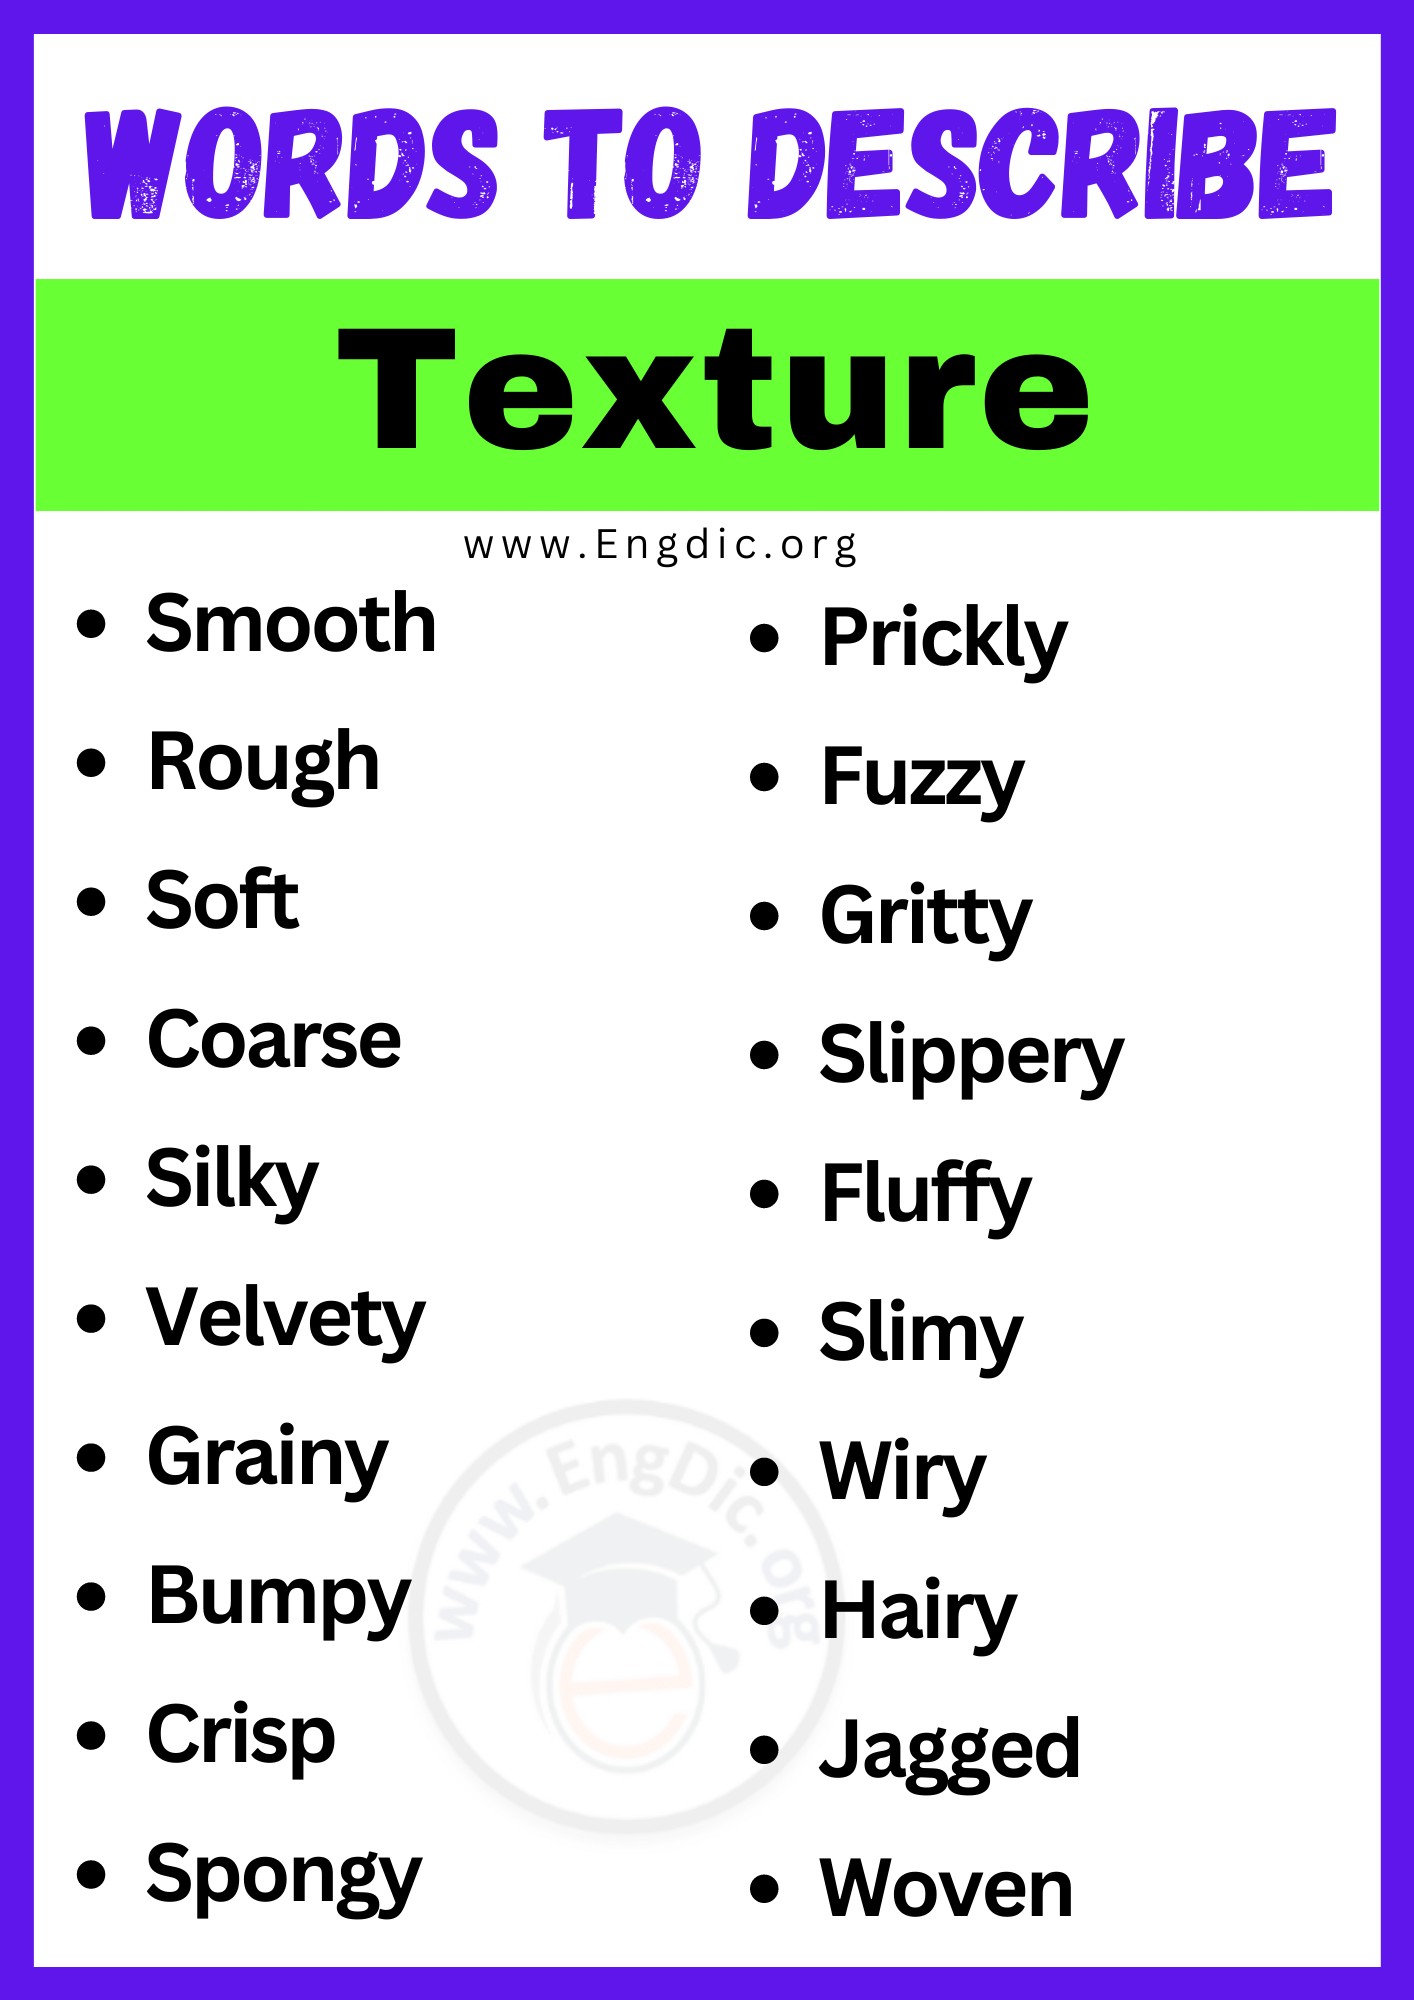 Words to Describe a Texture